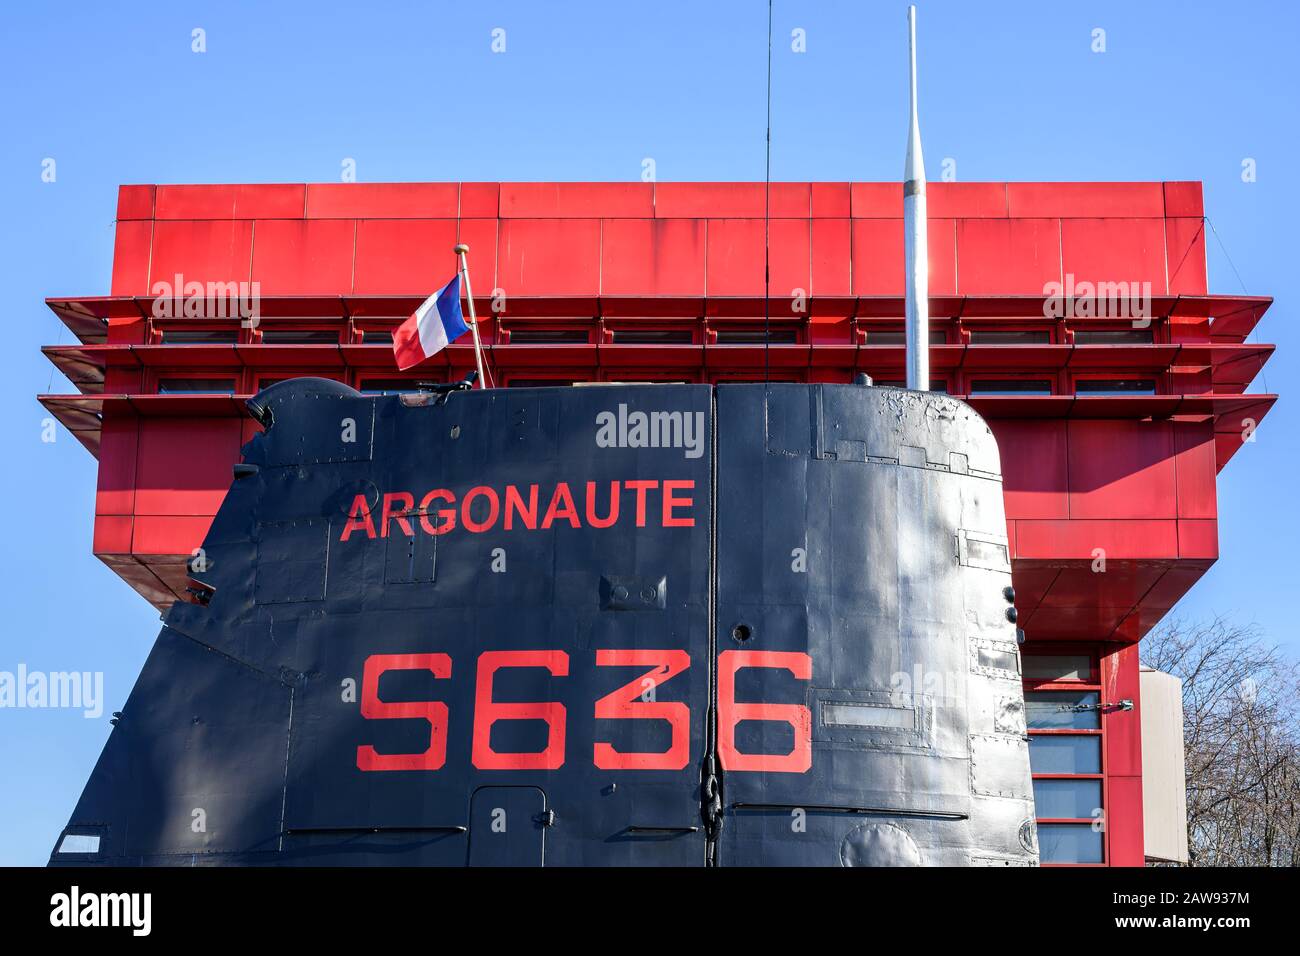 Paris, FRANKREICH - 7. FEBRUAR 2020: U-Boot der französischen Marine Argonaute (S636) im Parc de la Villette in Paris, umgebaut zum Museumsschiff. Stockfoto